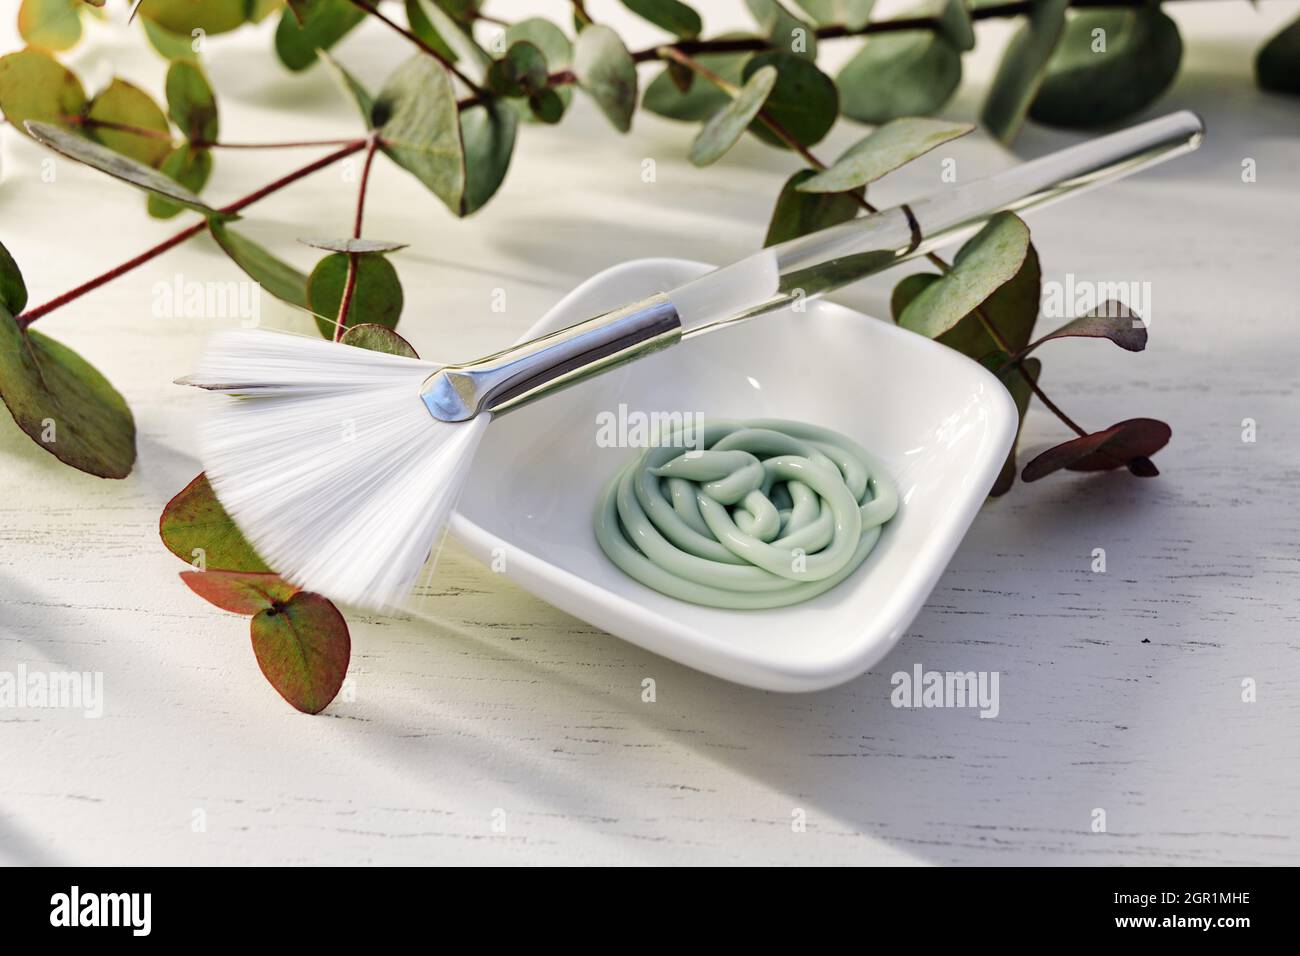 Kleine Schüssel mit cremiger Feuchtigkeitscreme Peeling Maske und einem weißen Pinsel auf einem hellen Holztisch mit grünen Pflanzenzweigen, kosmetisches Konzept, ausgewählte Fokus, na Stockfoto